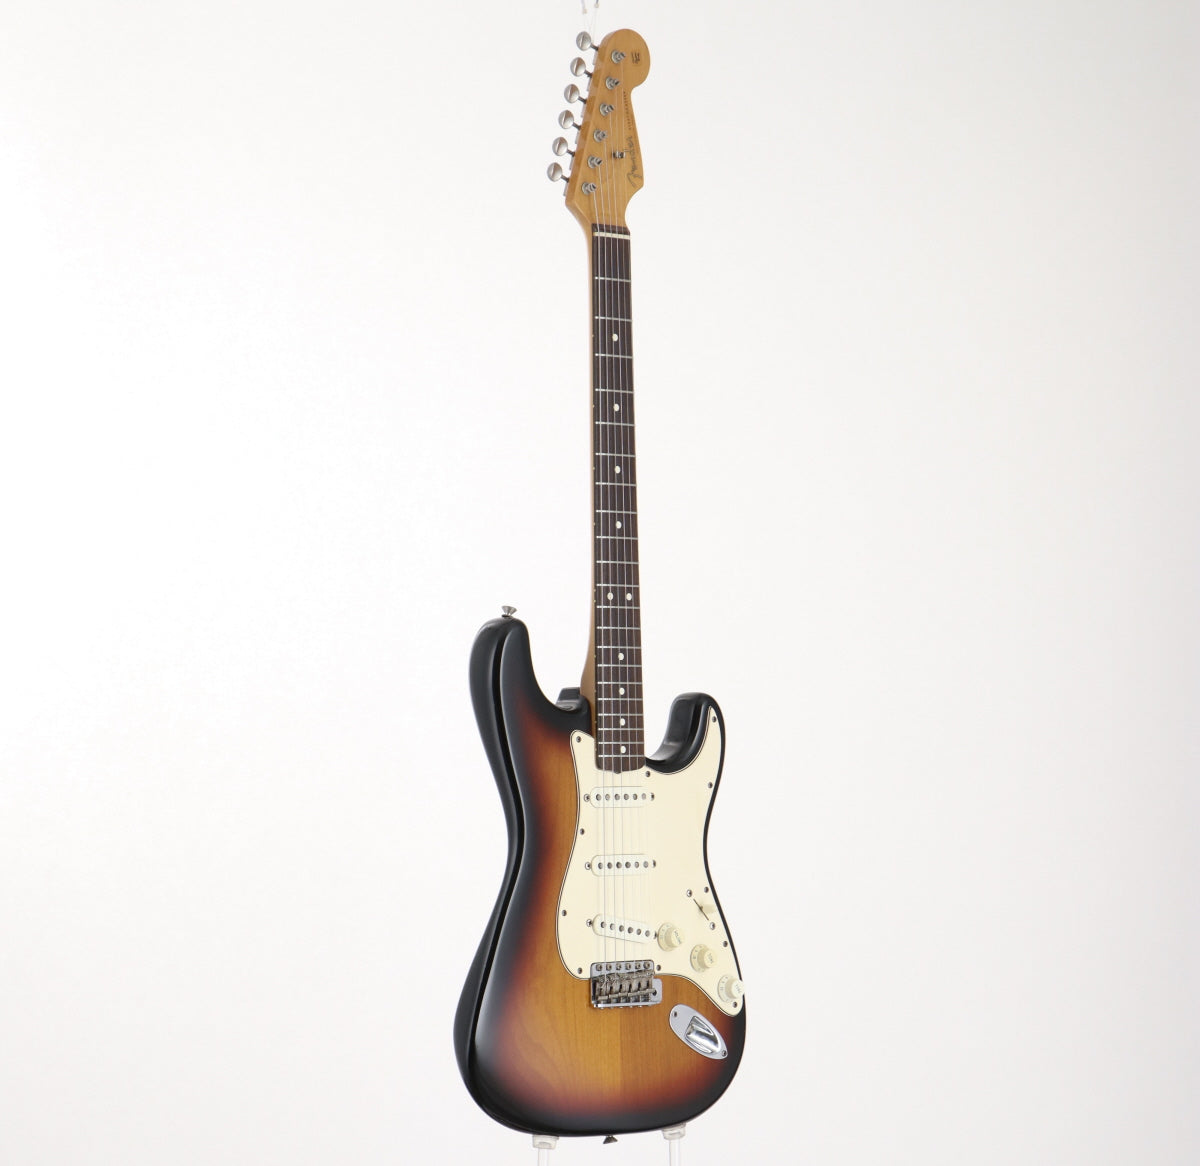 [SN V095818] USED Fender / American Vintage 62 Stratocaster 3-Color Sunburst, 1996 [09]